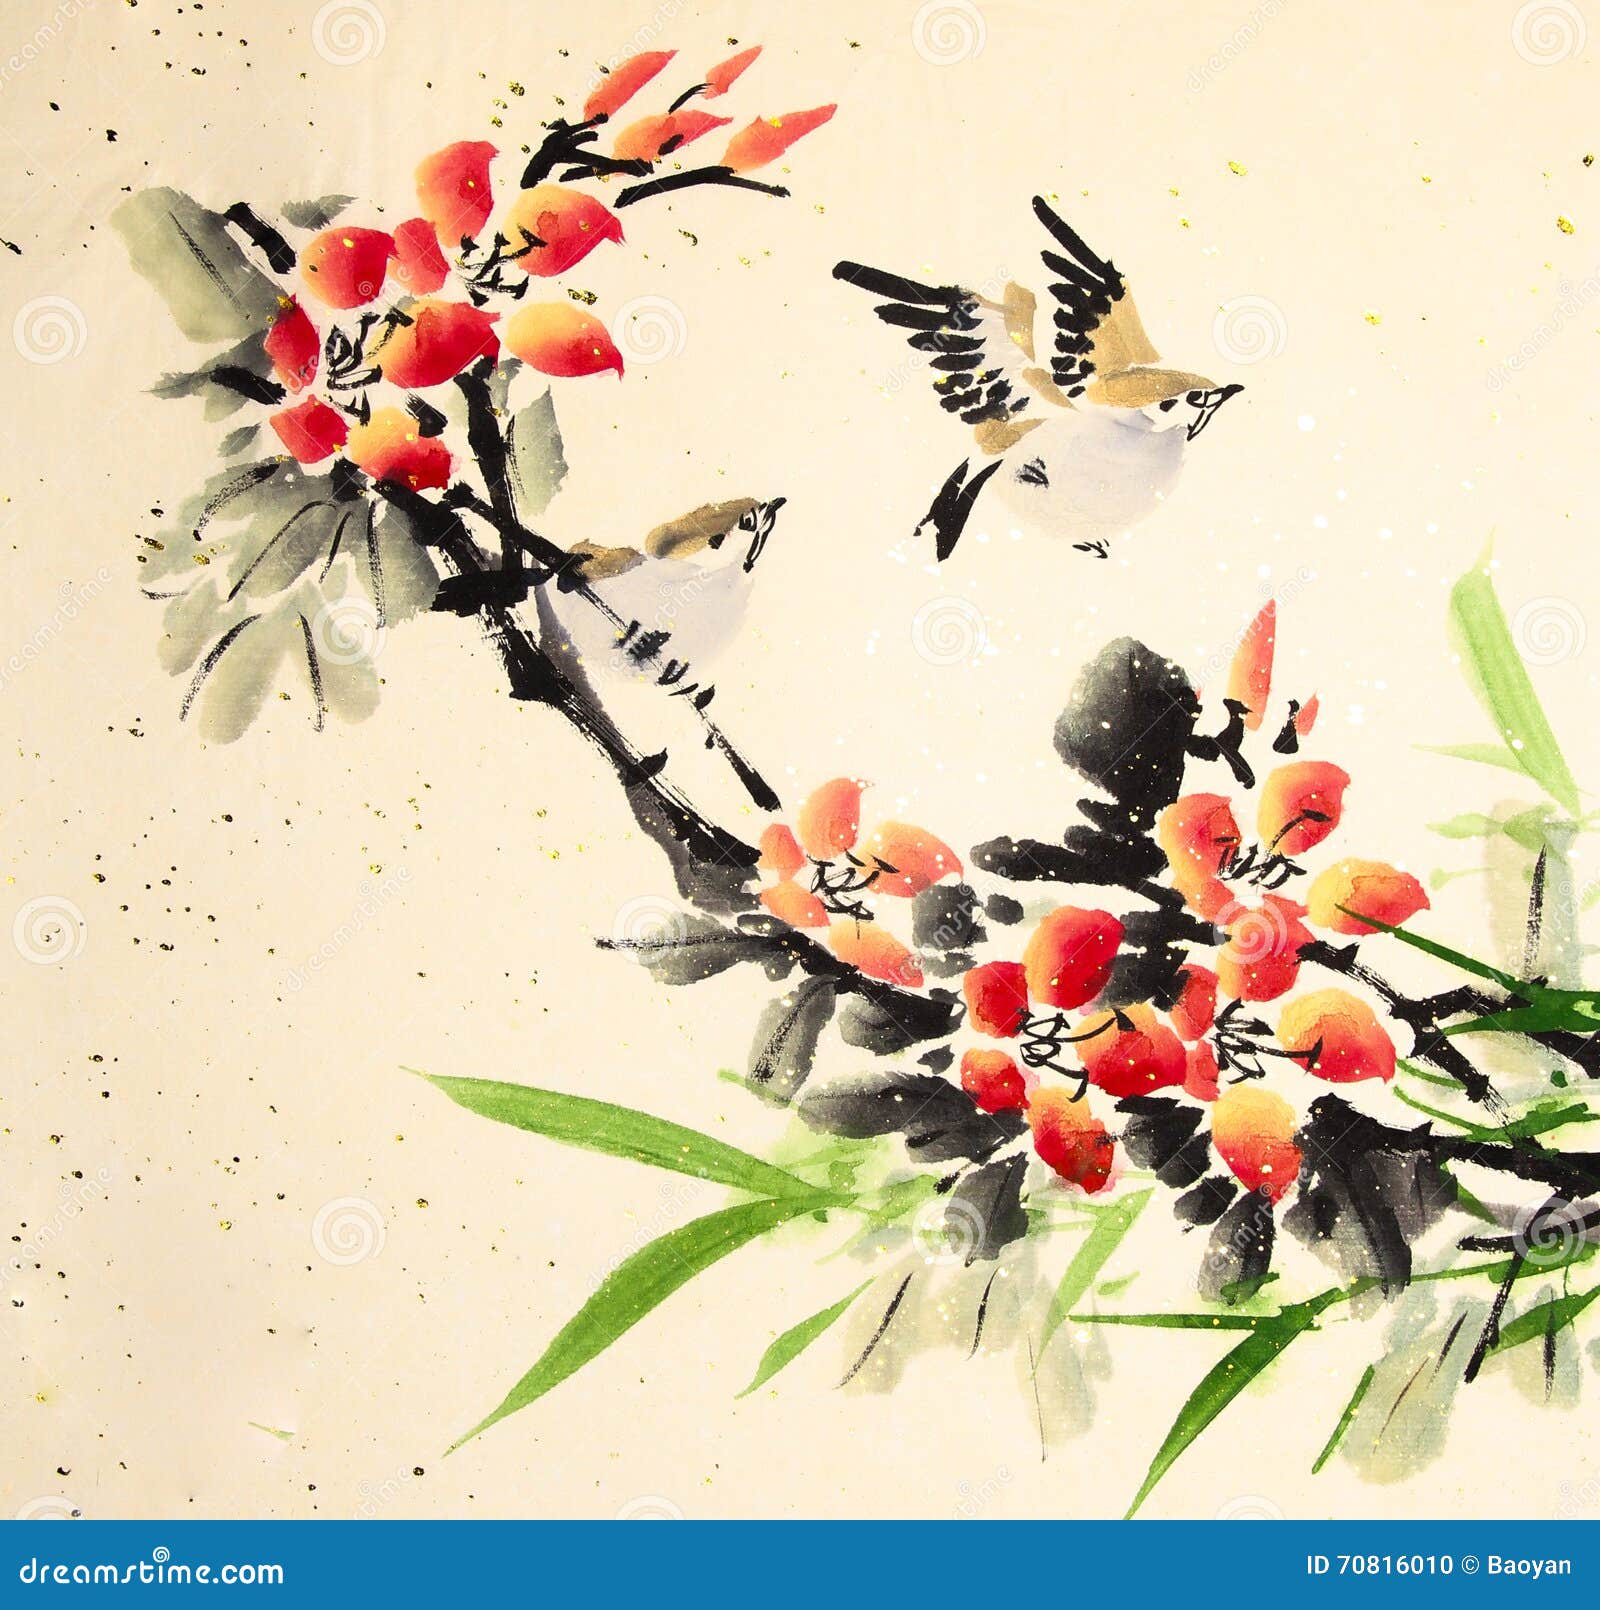 Птичка по китайски слушать. Птицы в китайском стиле. Рисунки птиц в китайском стиле. Художник Zeng Xiao Lian птицы и цветы. Китайские птички картинки.